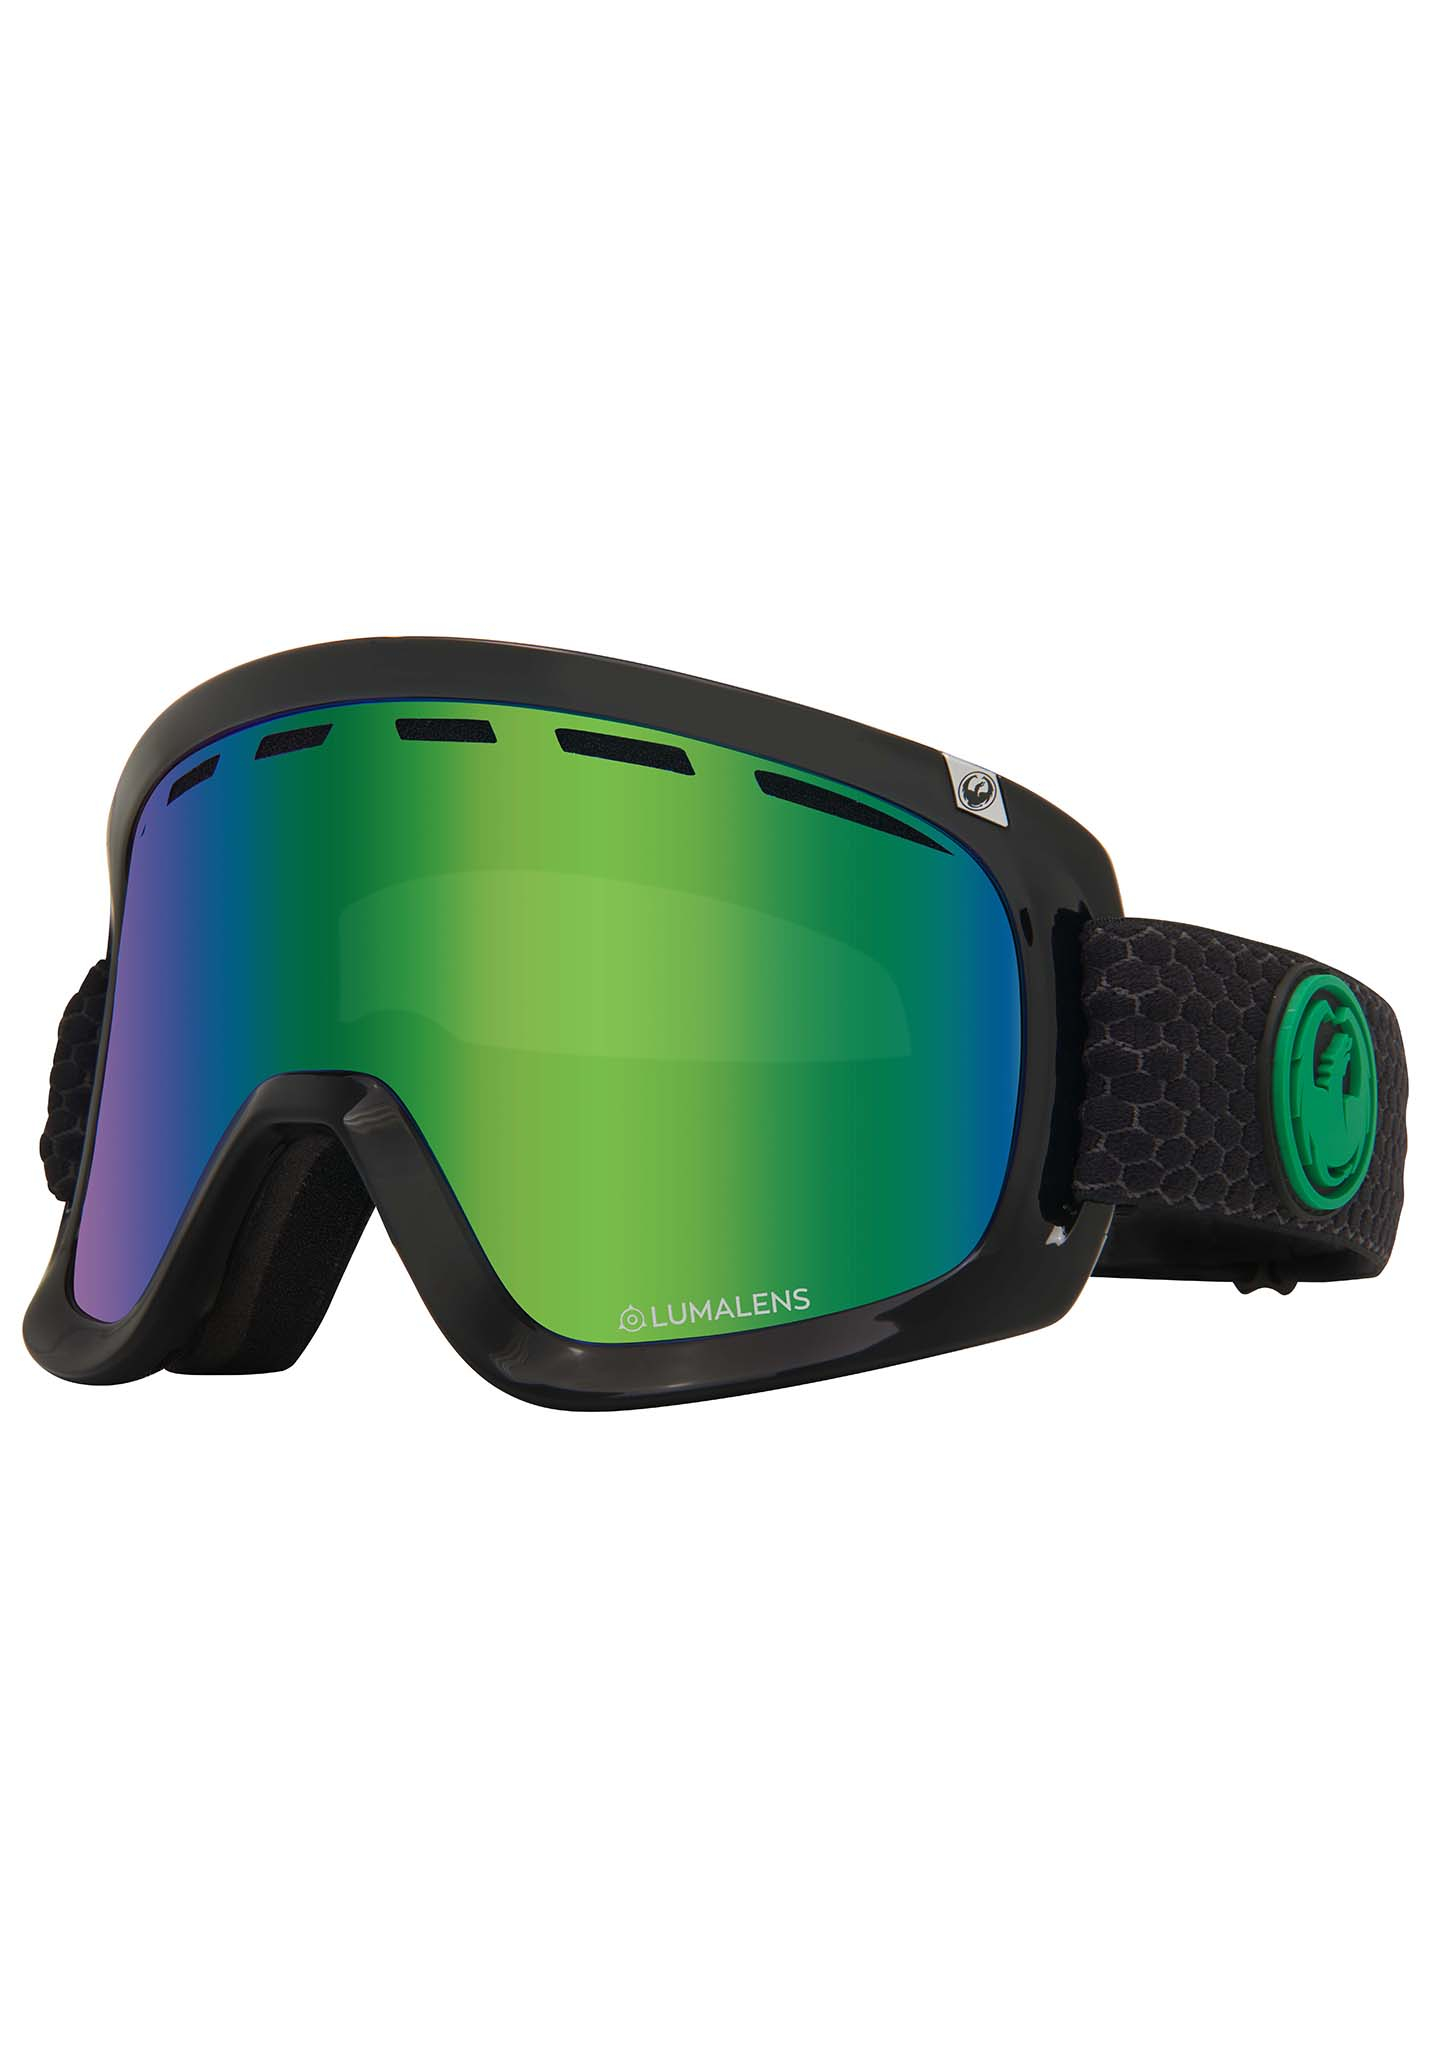 Dragon D1 OTG Snowboardbrillen geteilt/ leuchte grün + leuchte amber One Size